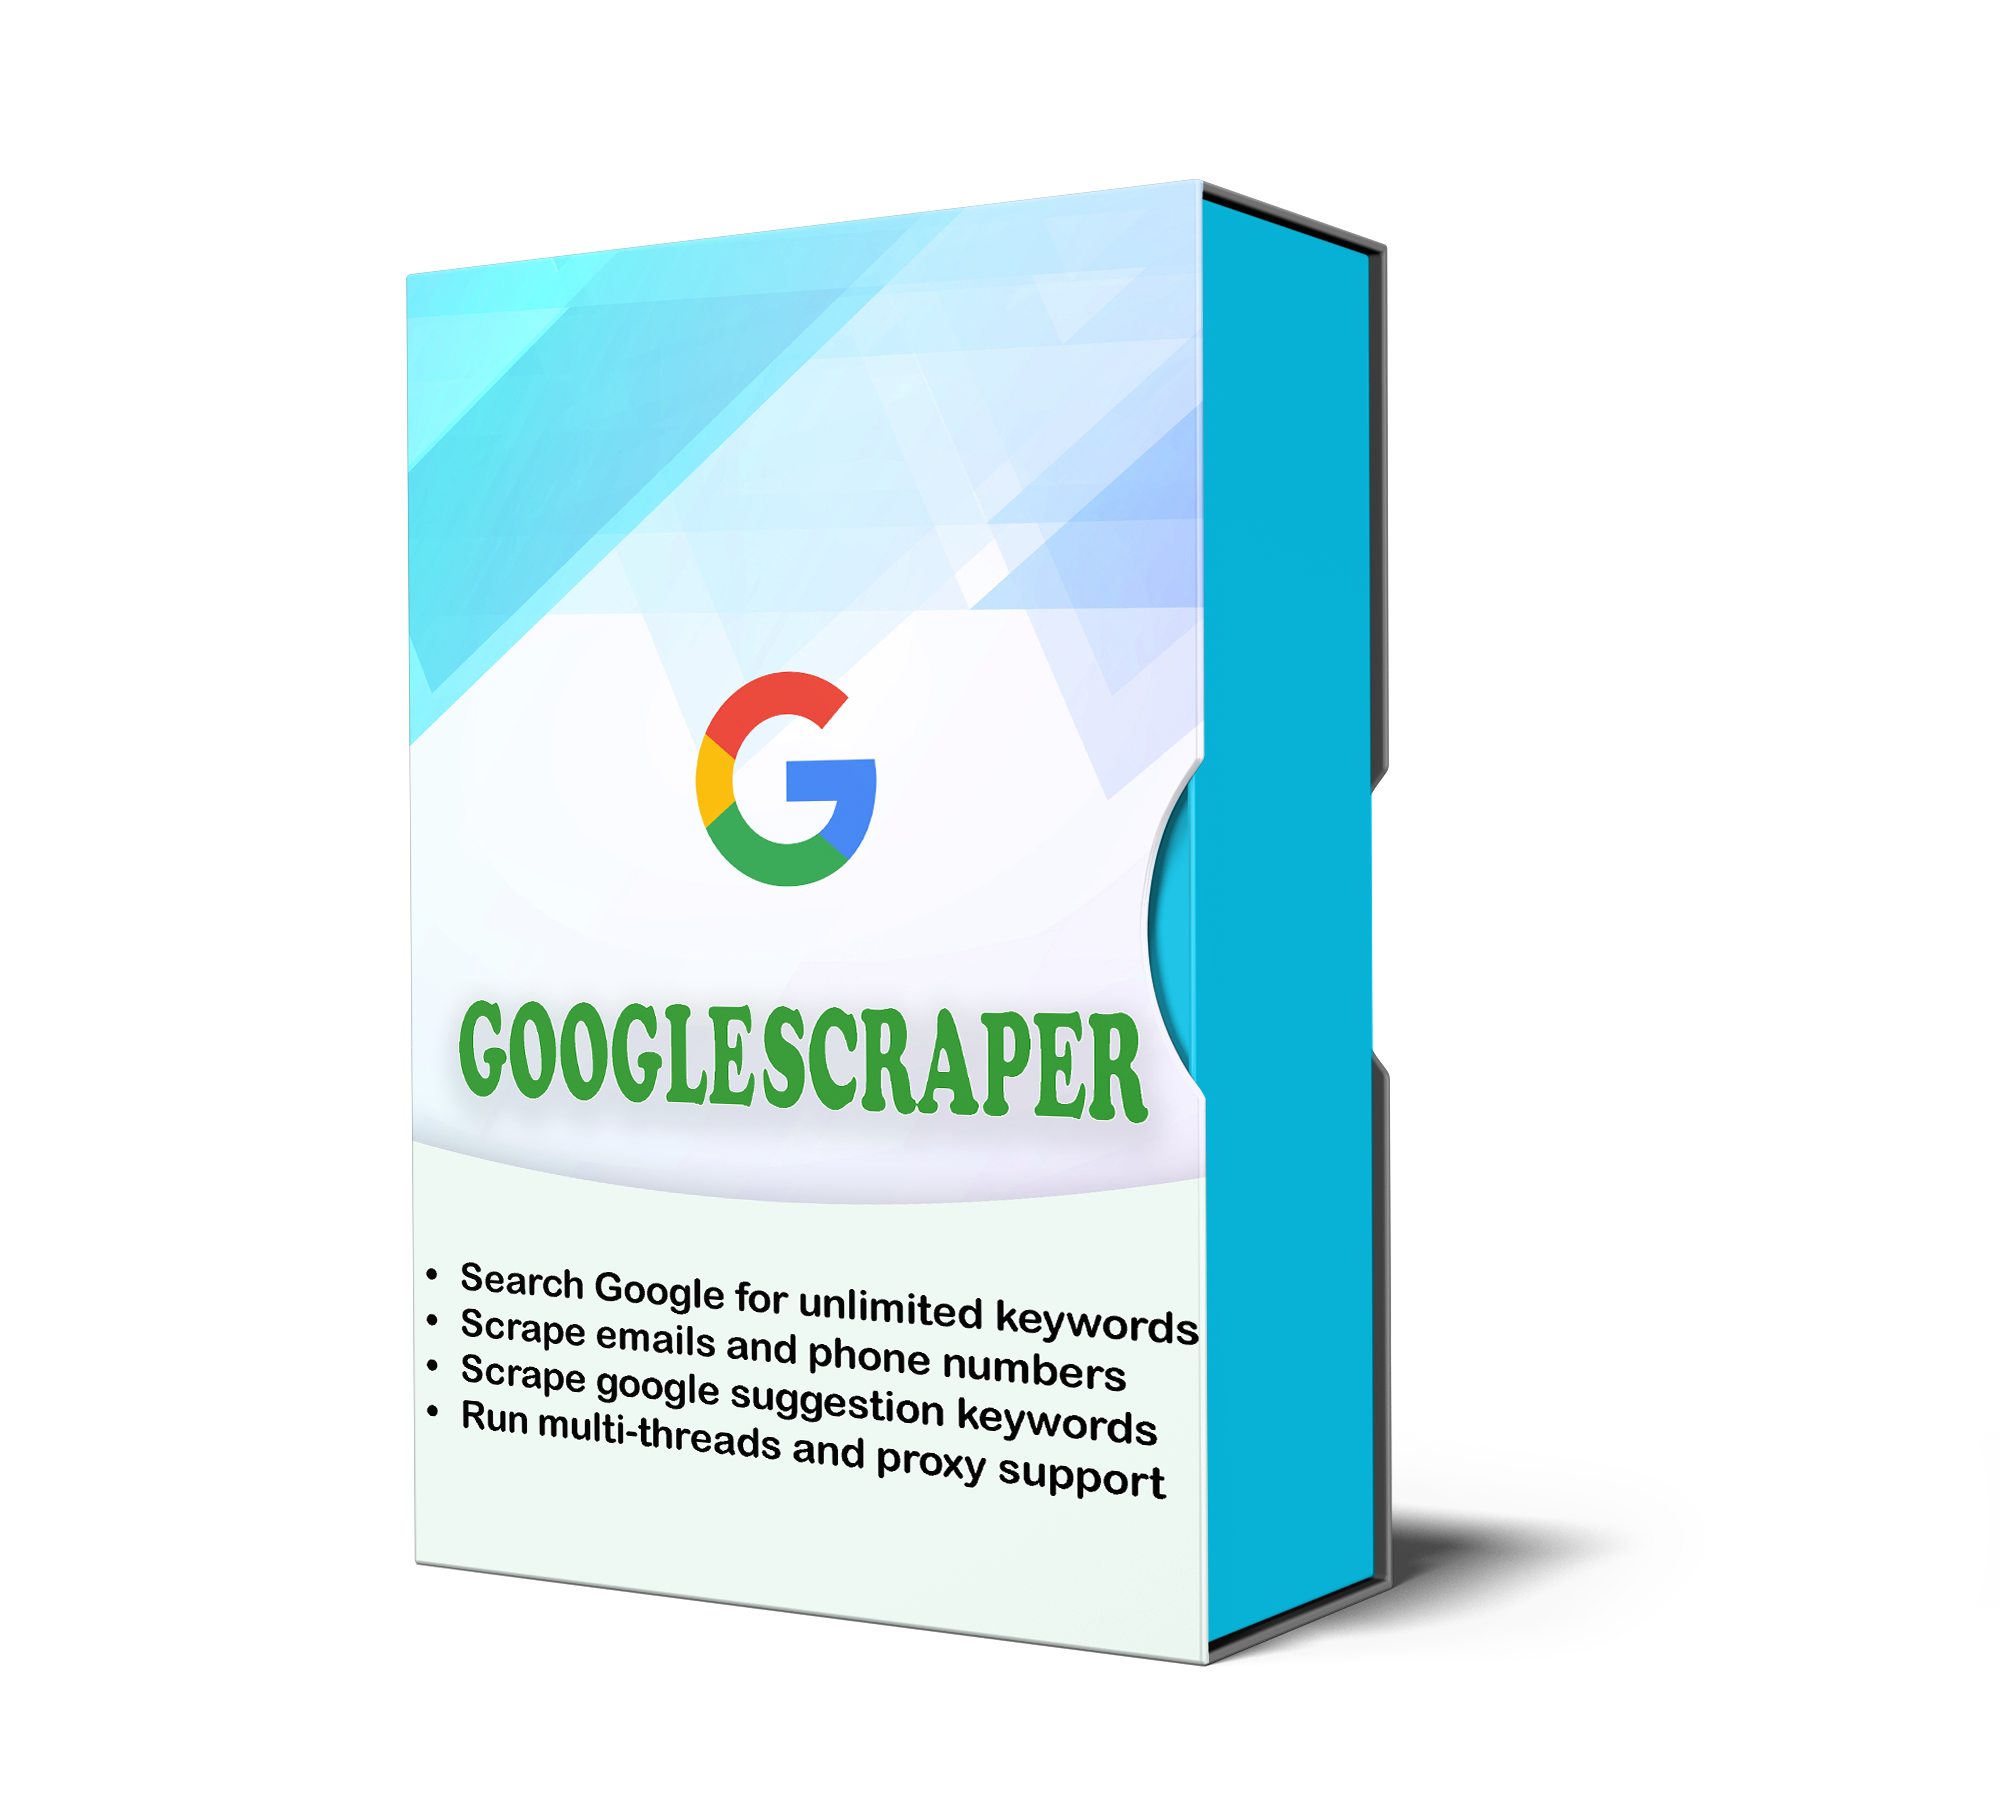 GoogleScraper